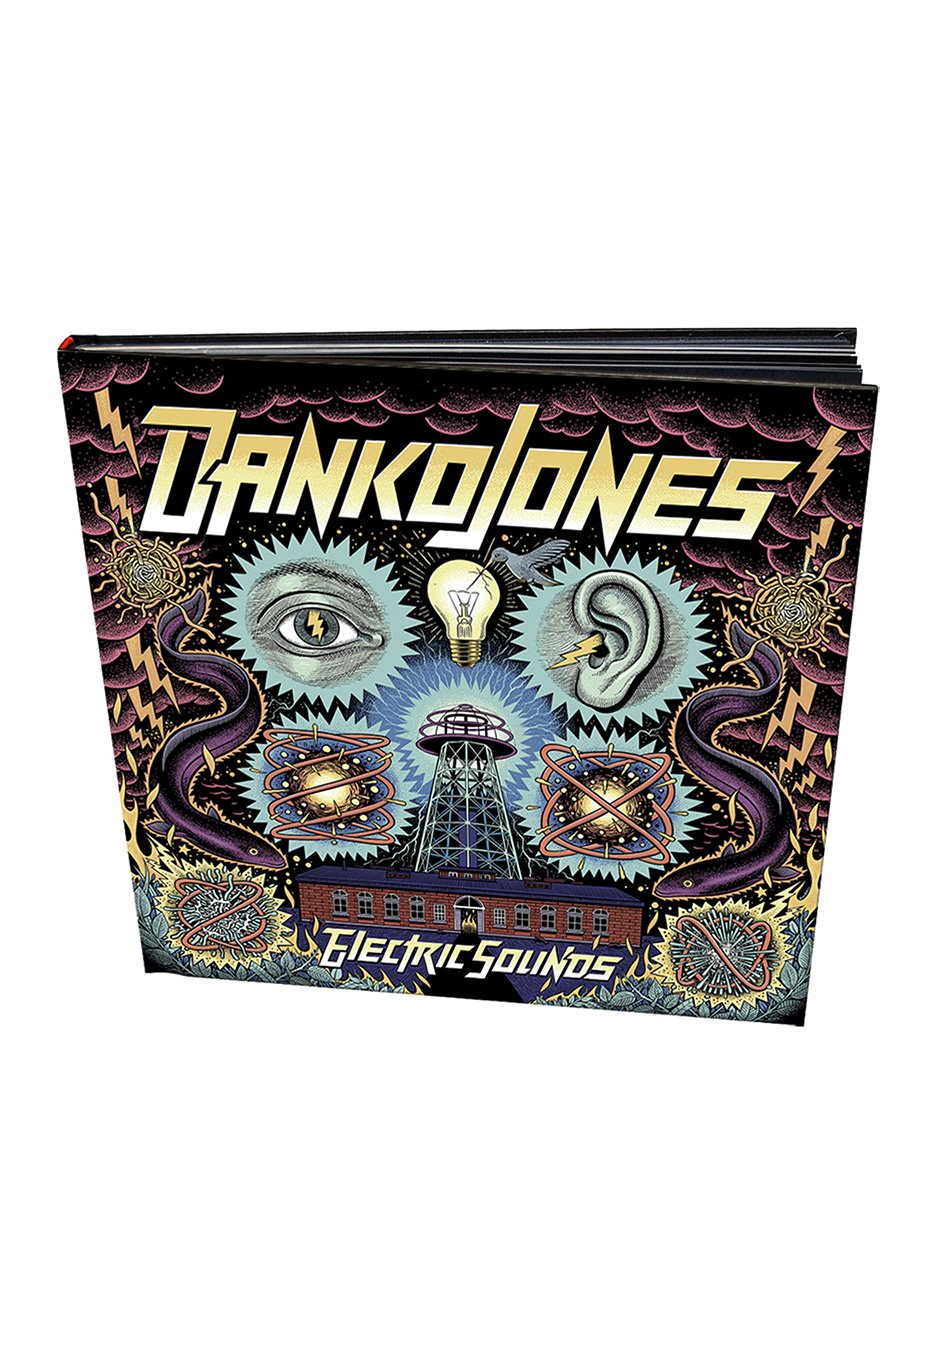 Danko Jones - Electric Sounds Ltd. - Earbook CD